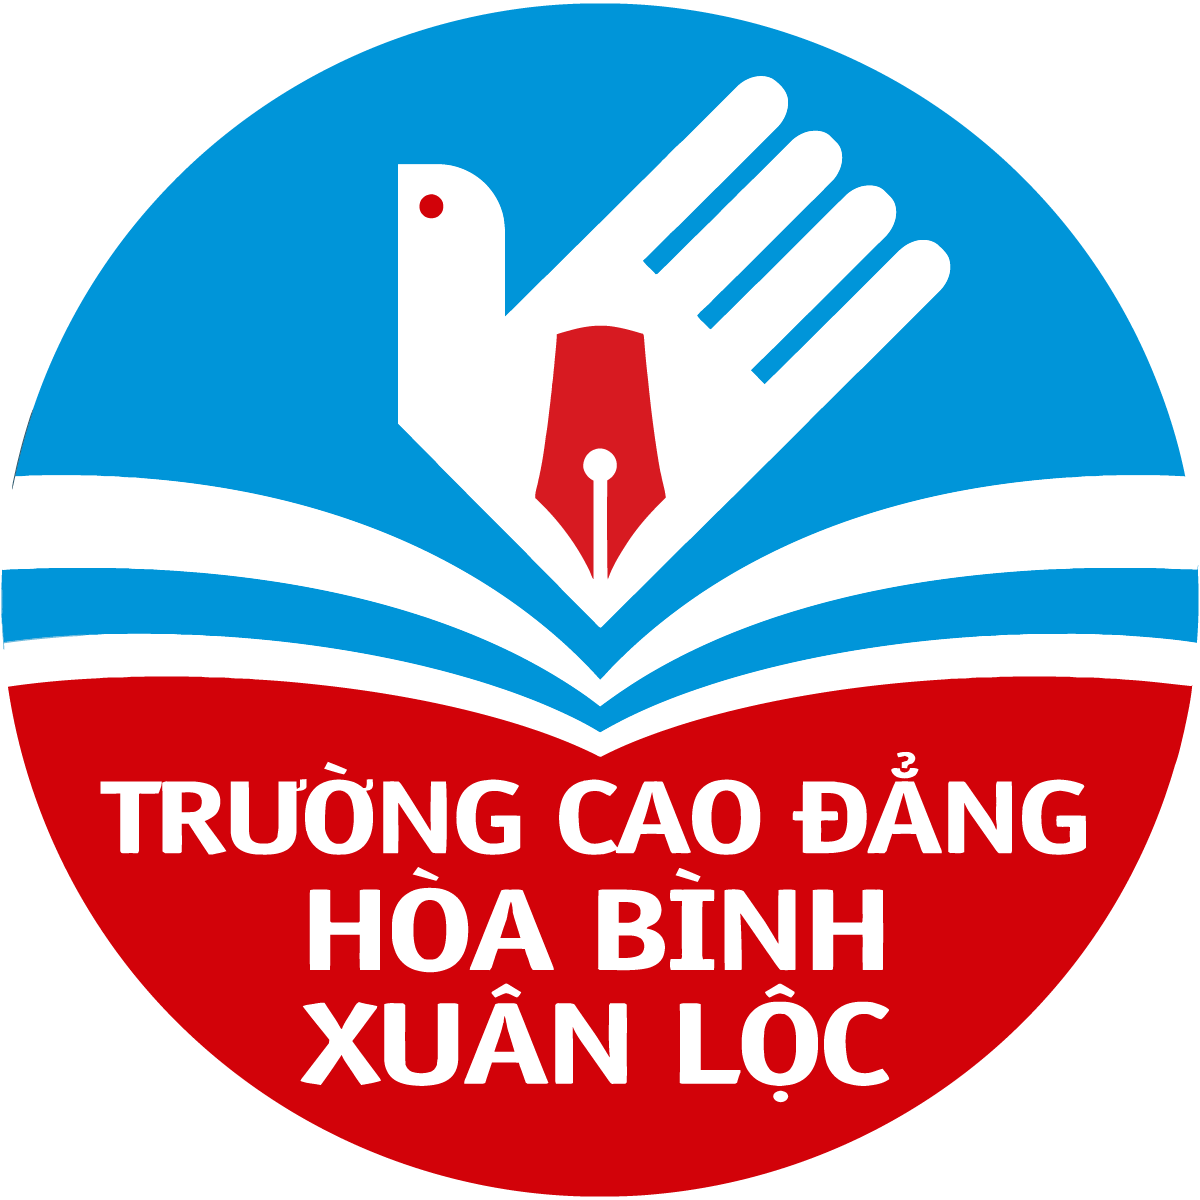 Vector Logo] Trường Cao đẳng Hòa Bình Xuân Lộc - Hoa Binh Xuan Loc ...